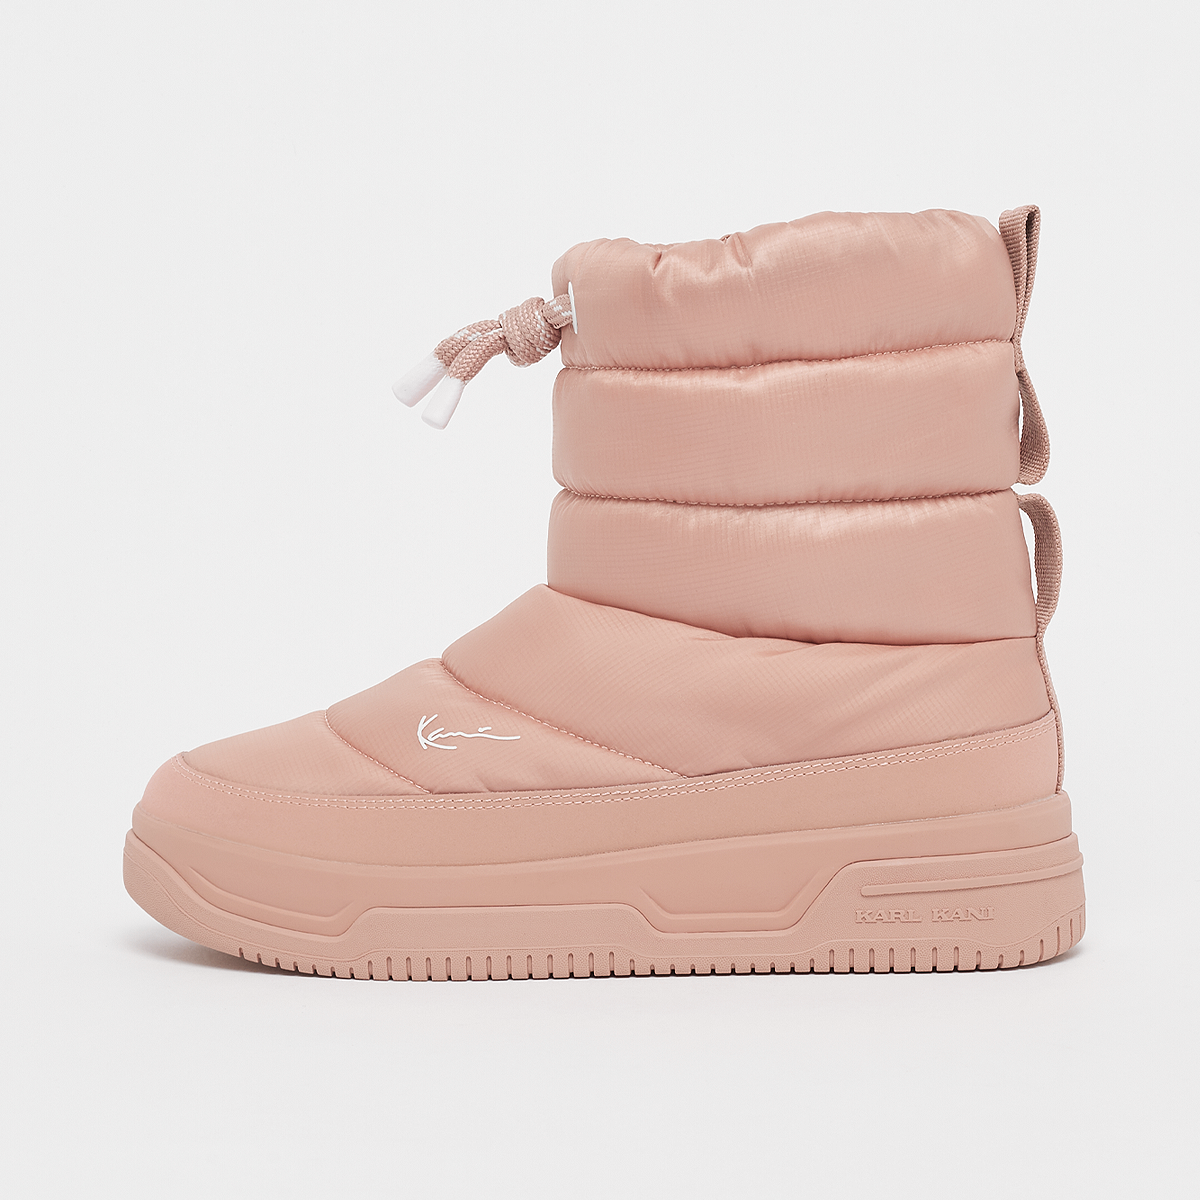 pillow boot, karl kani, footwear, pink, taille: 40.5